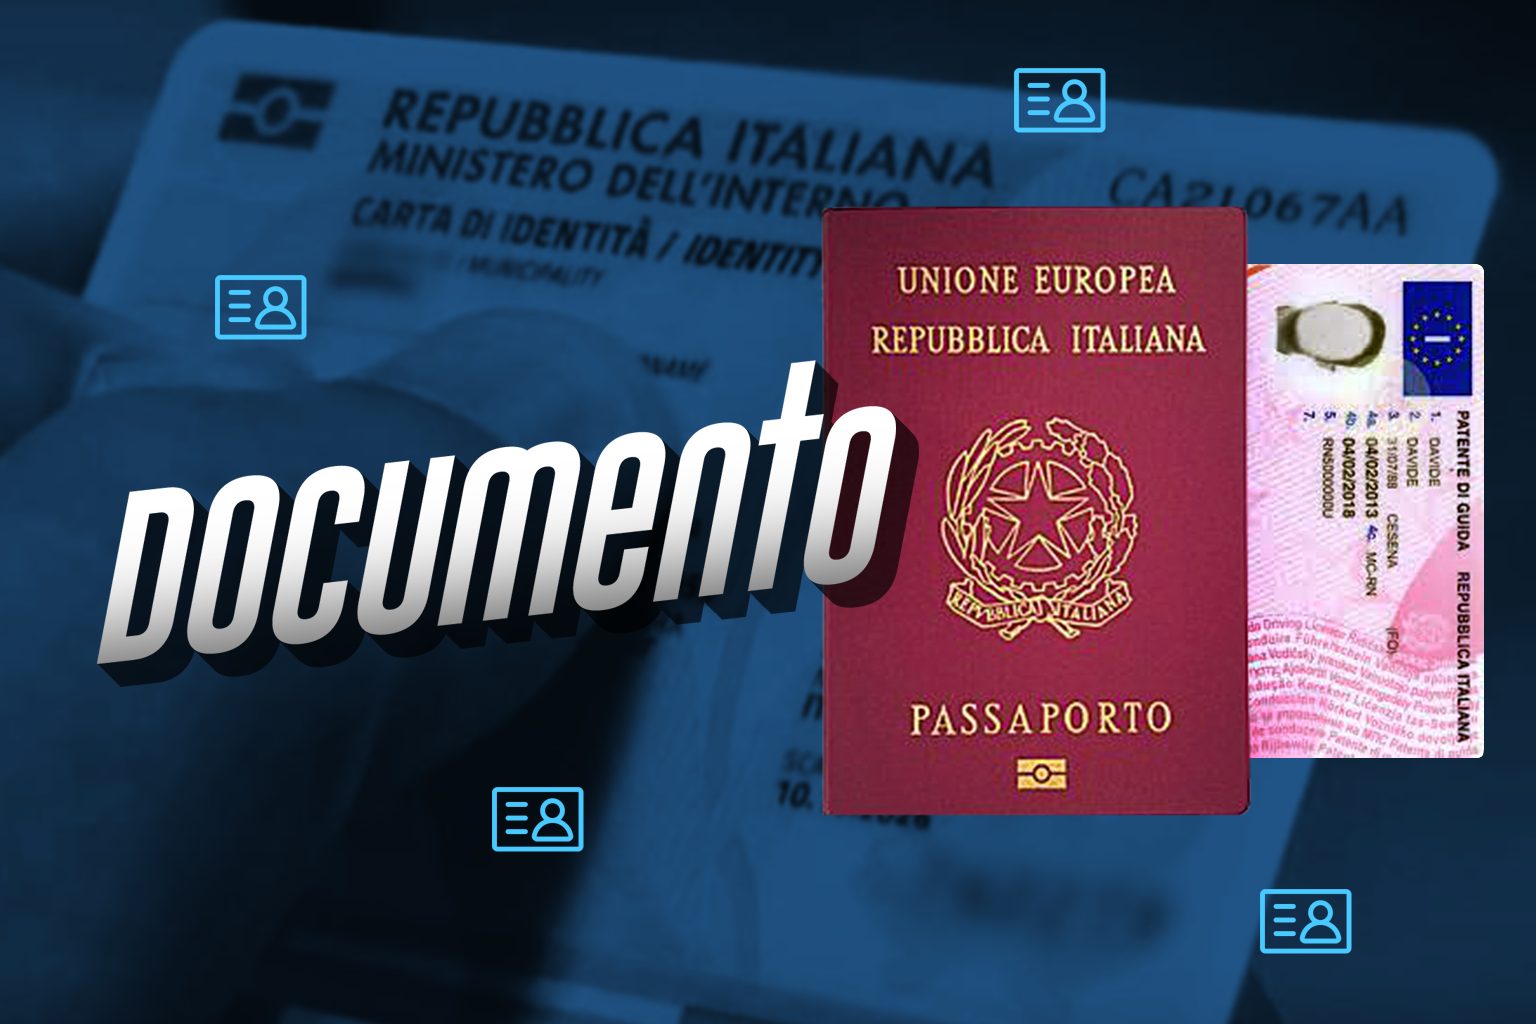 inserire dati carta identità o passaporto